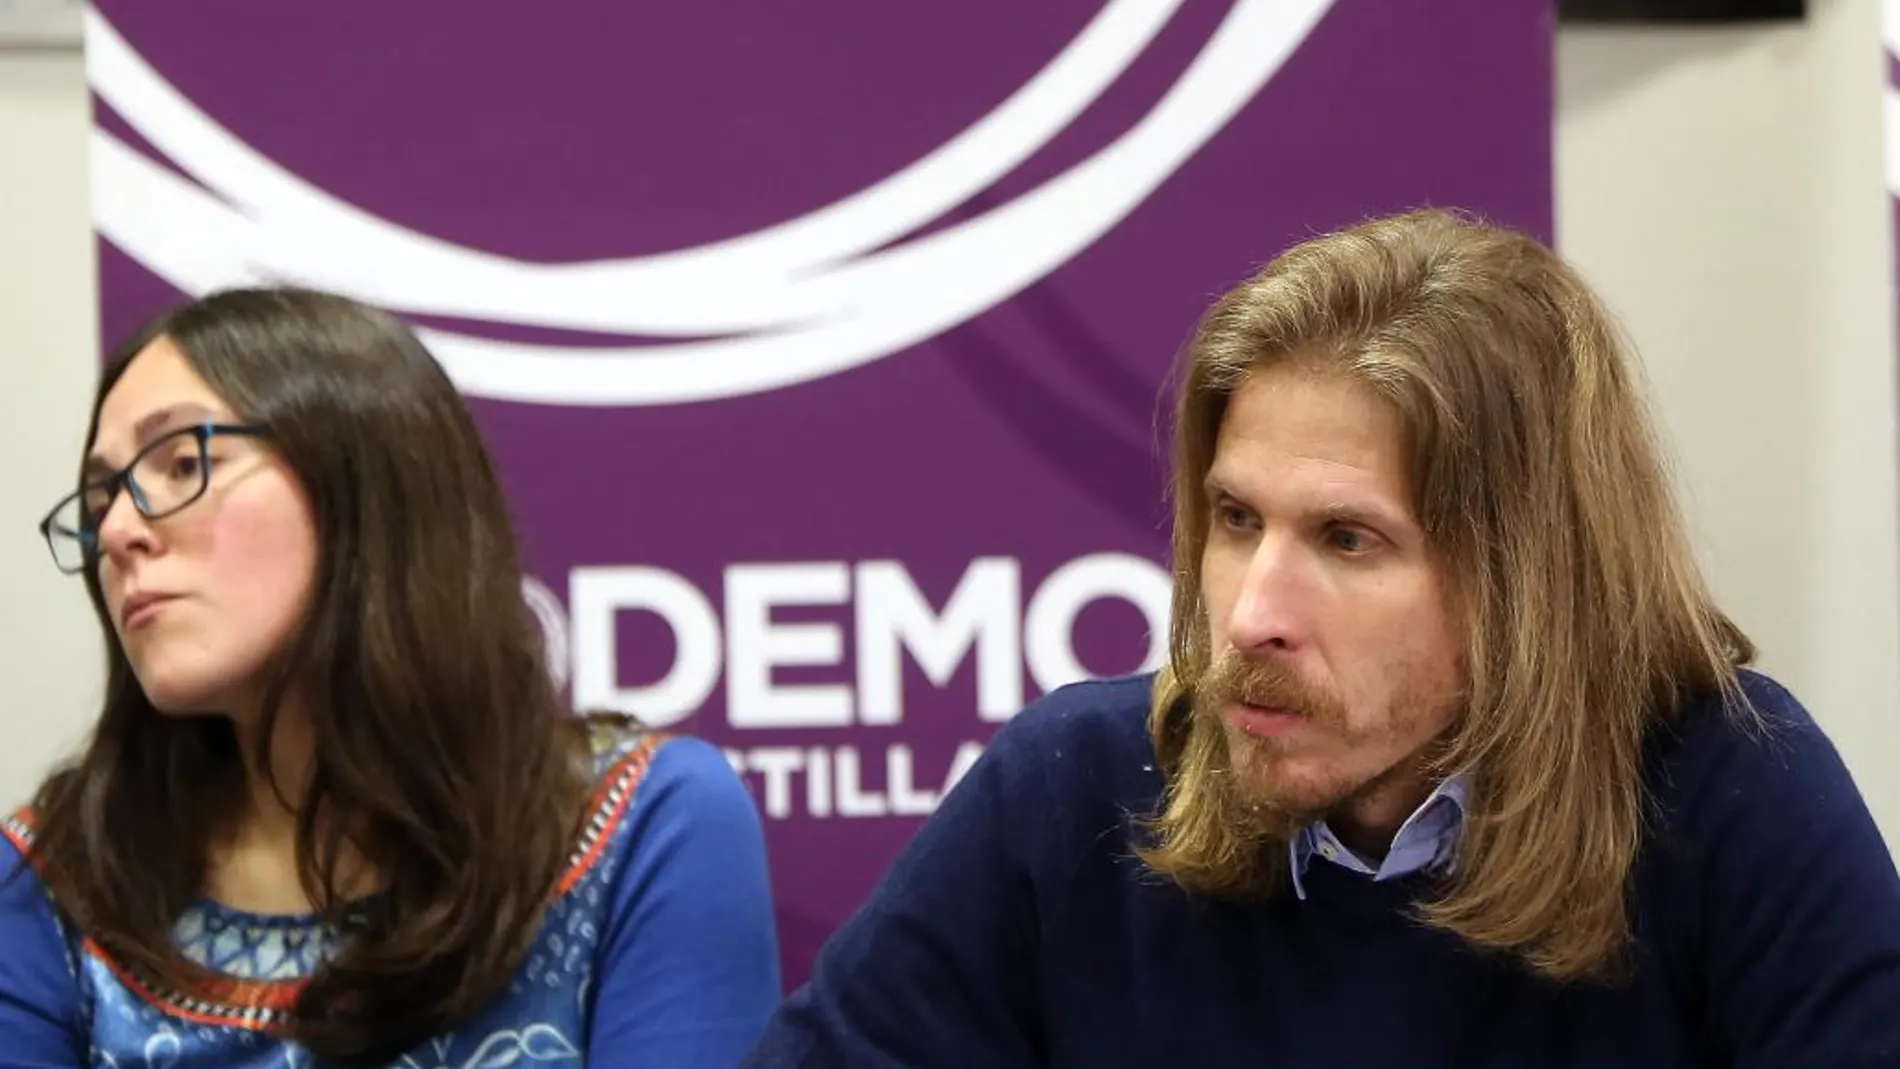 El secretario general de Podemos Castilla y León, Pablo Fernández, preside el Consejo Autonómico Ciudadano de la formación morada